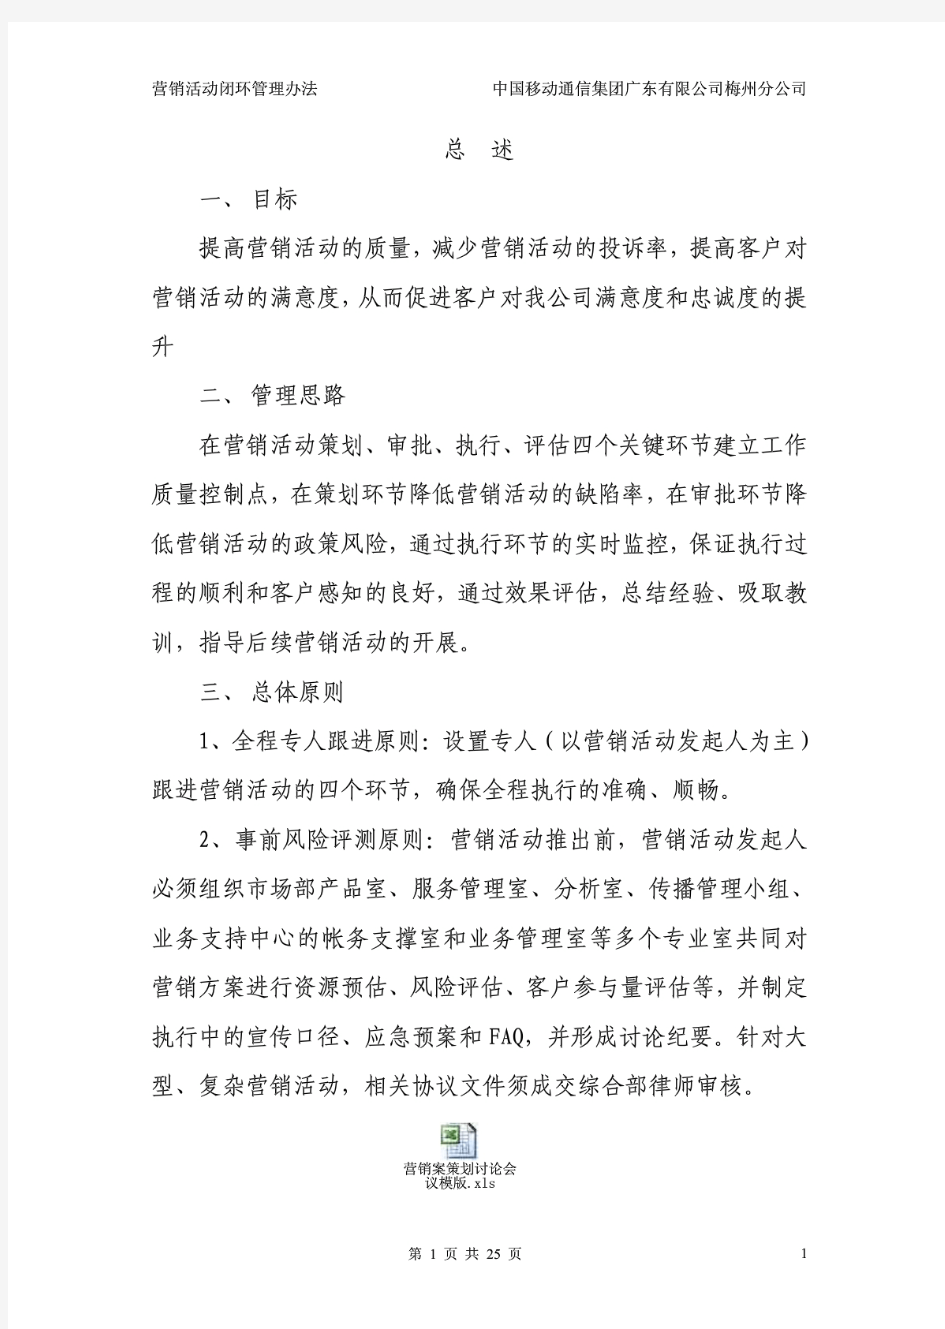 中国移动梅州分公司营销活动闭环管理制度(pdf 26页)